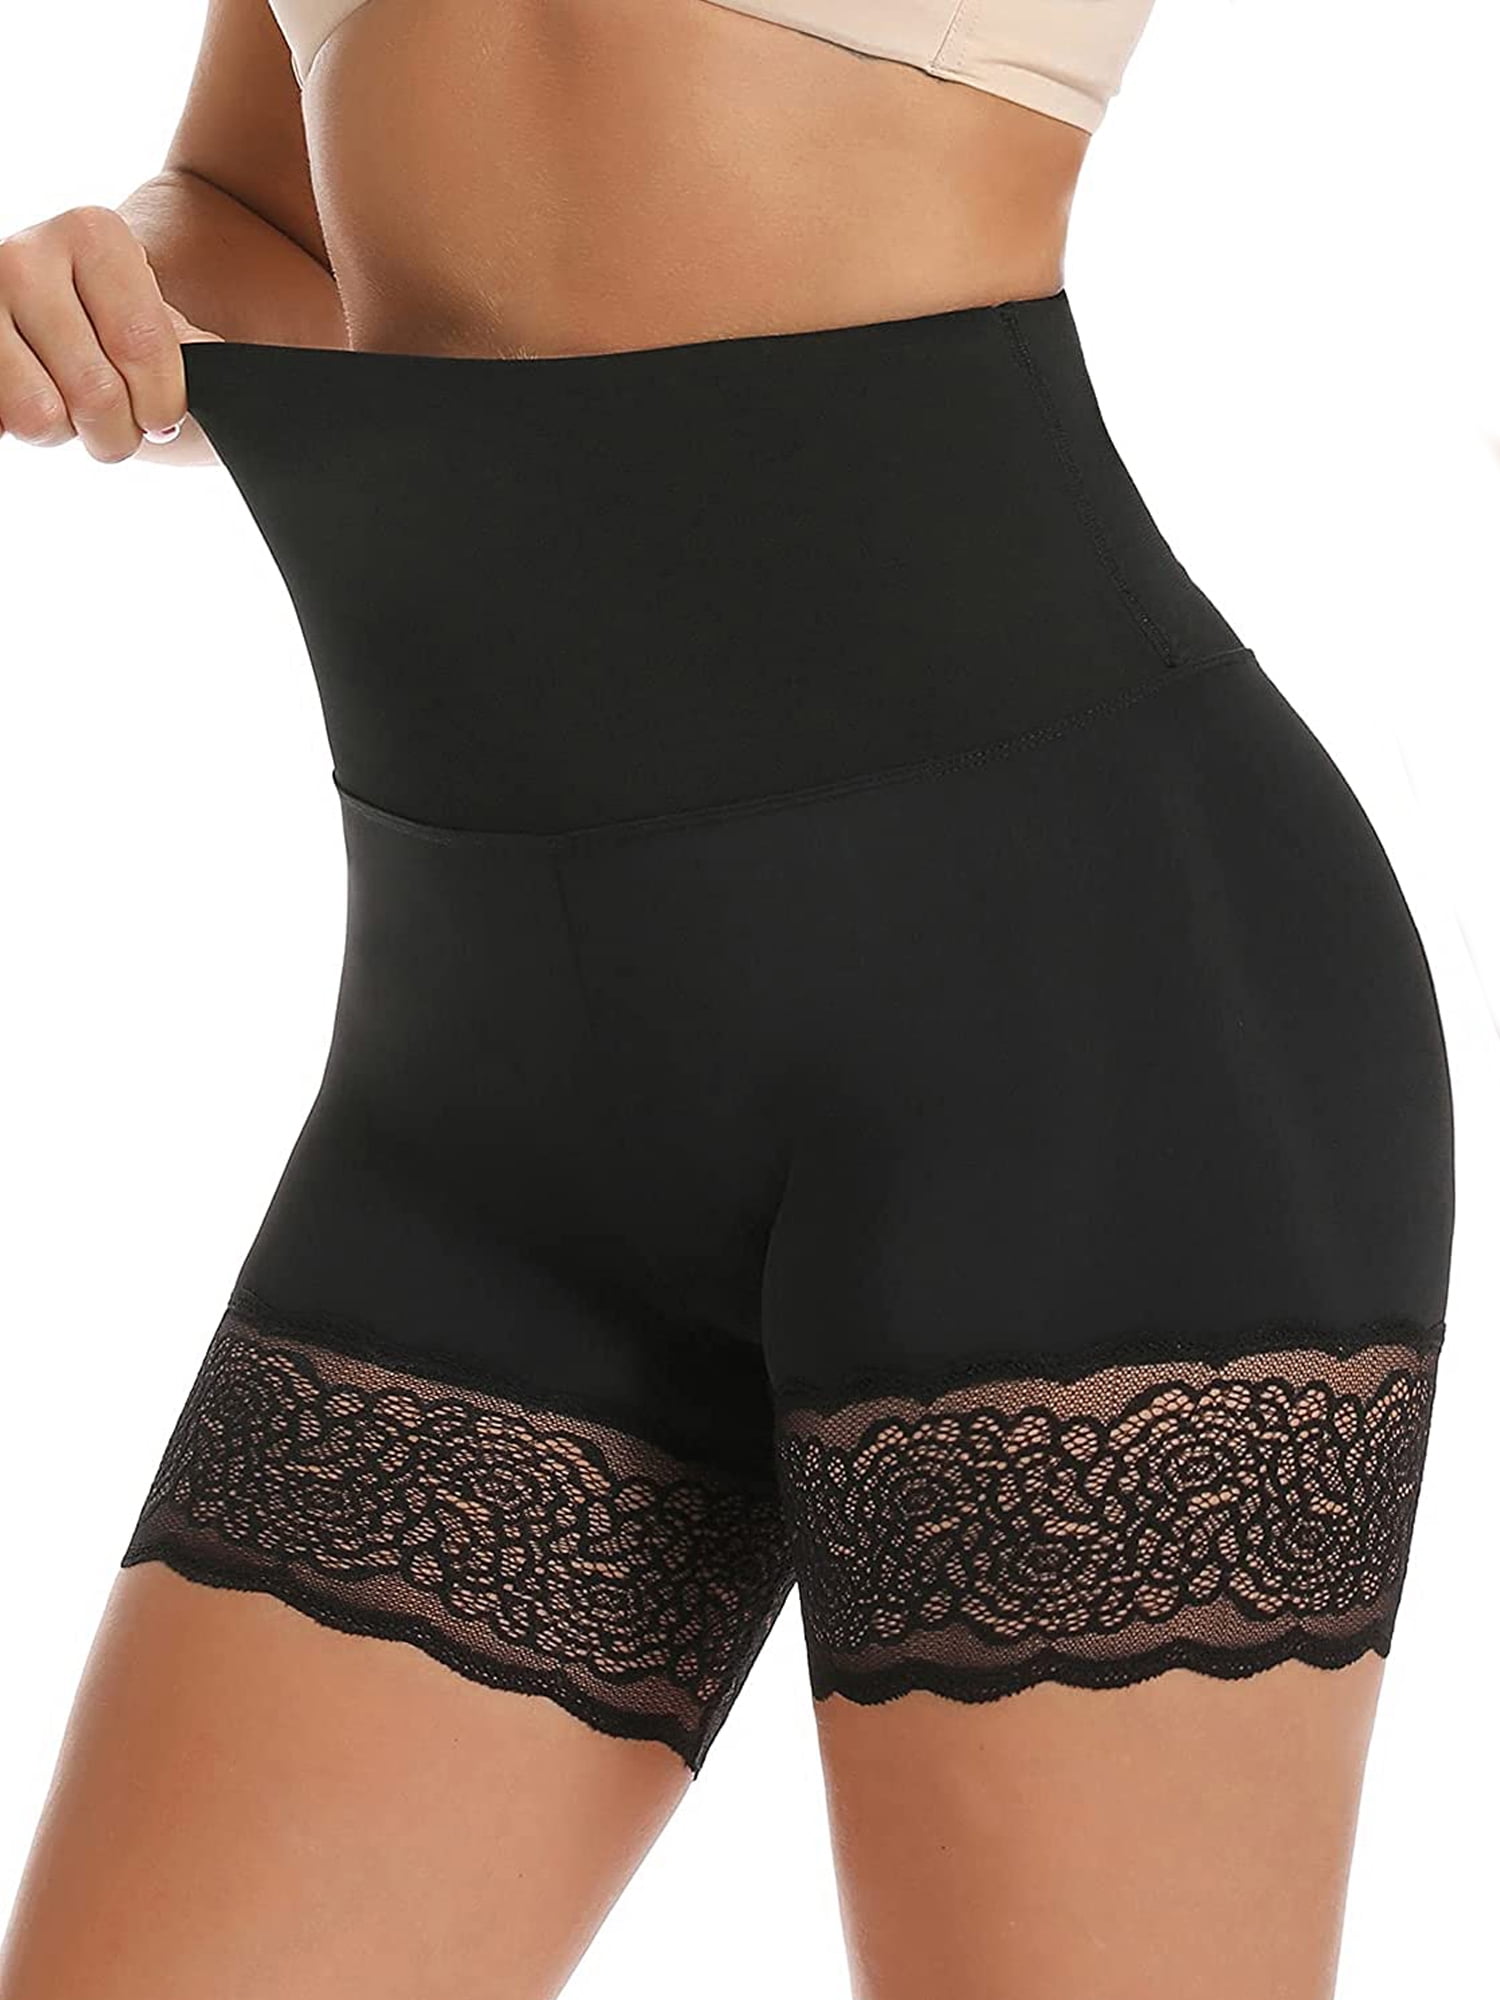 Wowen Seamless Shapewear Tummy Control Panty High Waist Lace Thigh